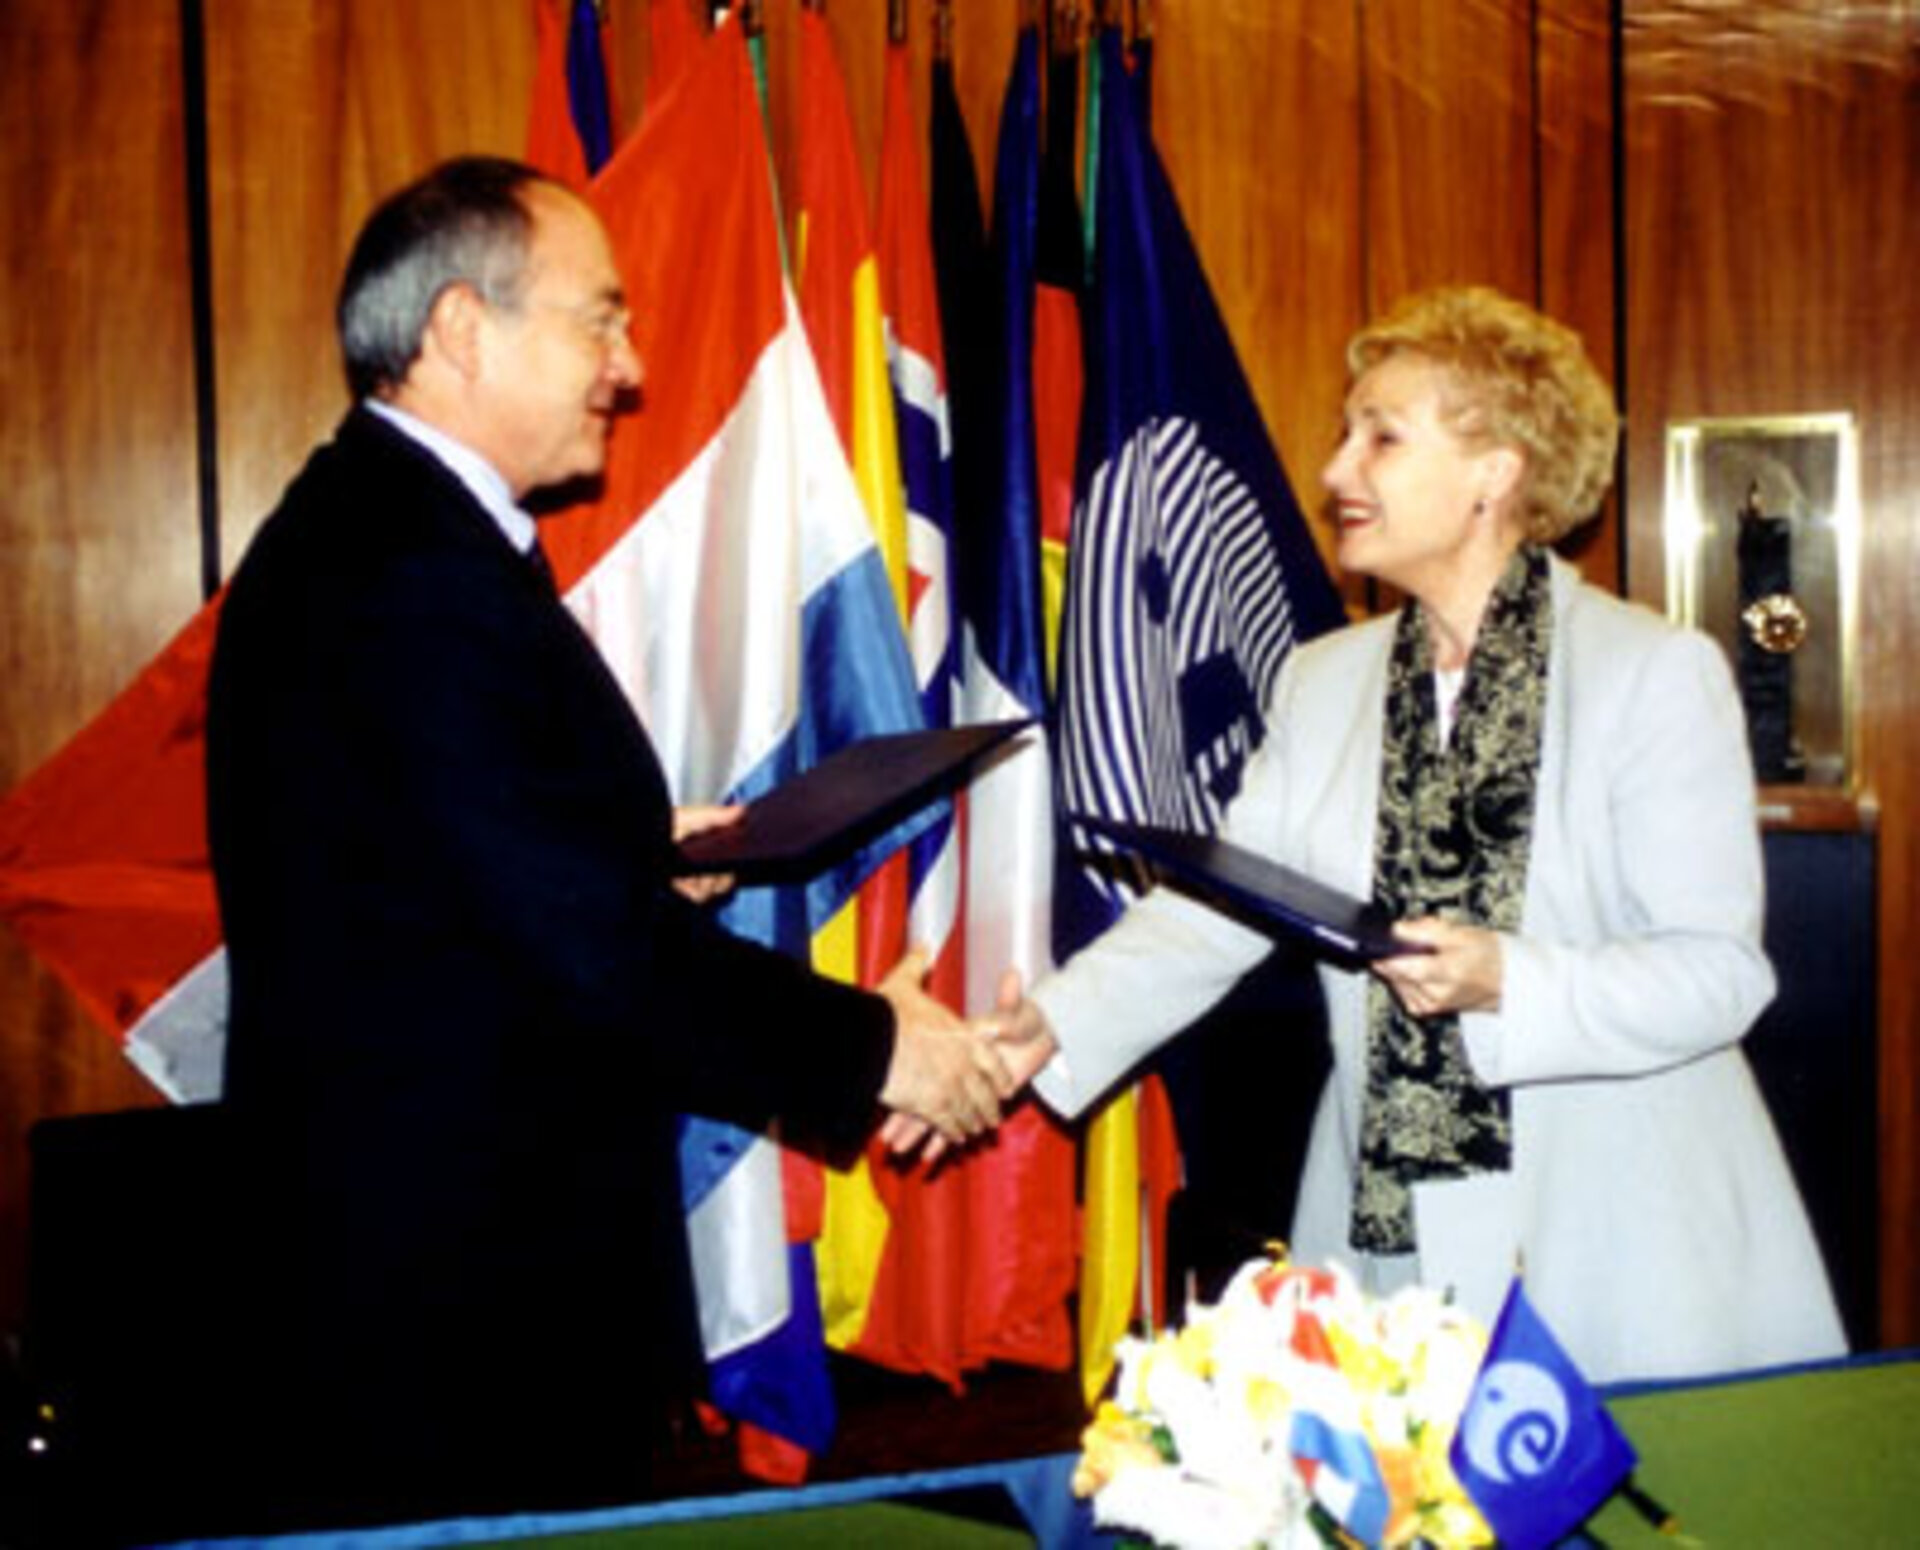 Le 6 mai, signature de l'acte d'adhésion du Grand-Duché à la Convention de l'ESA